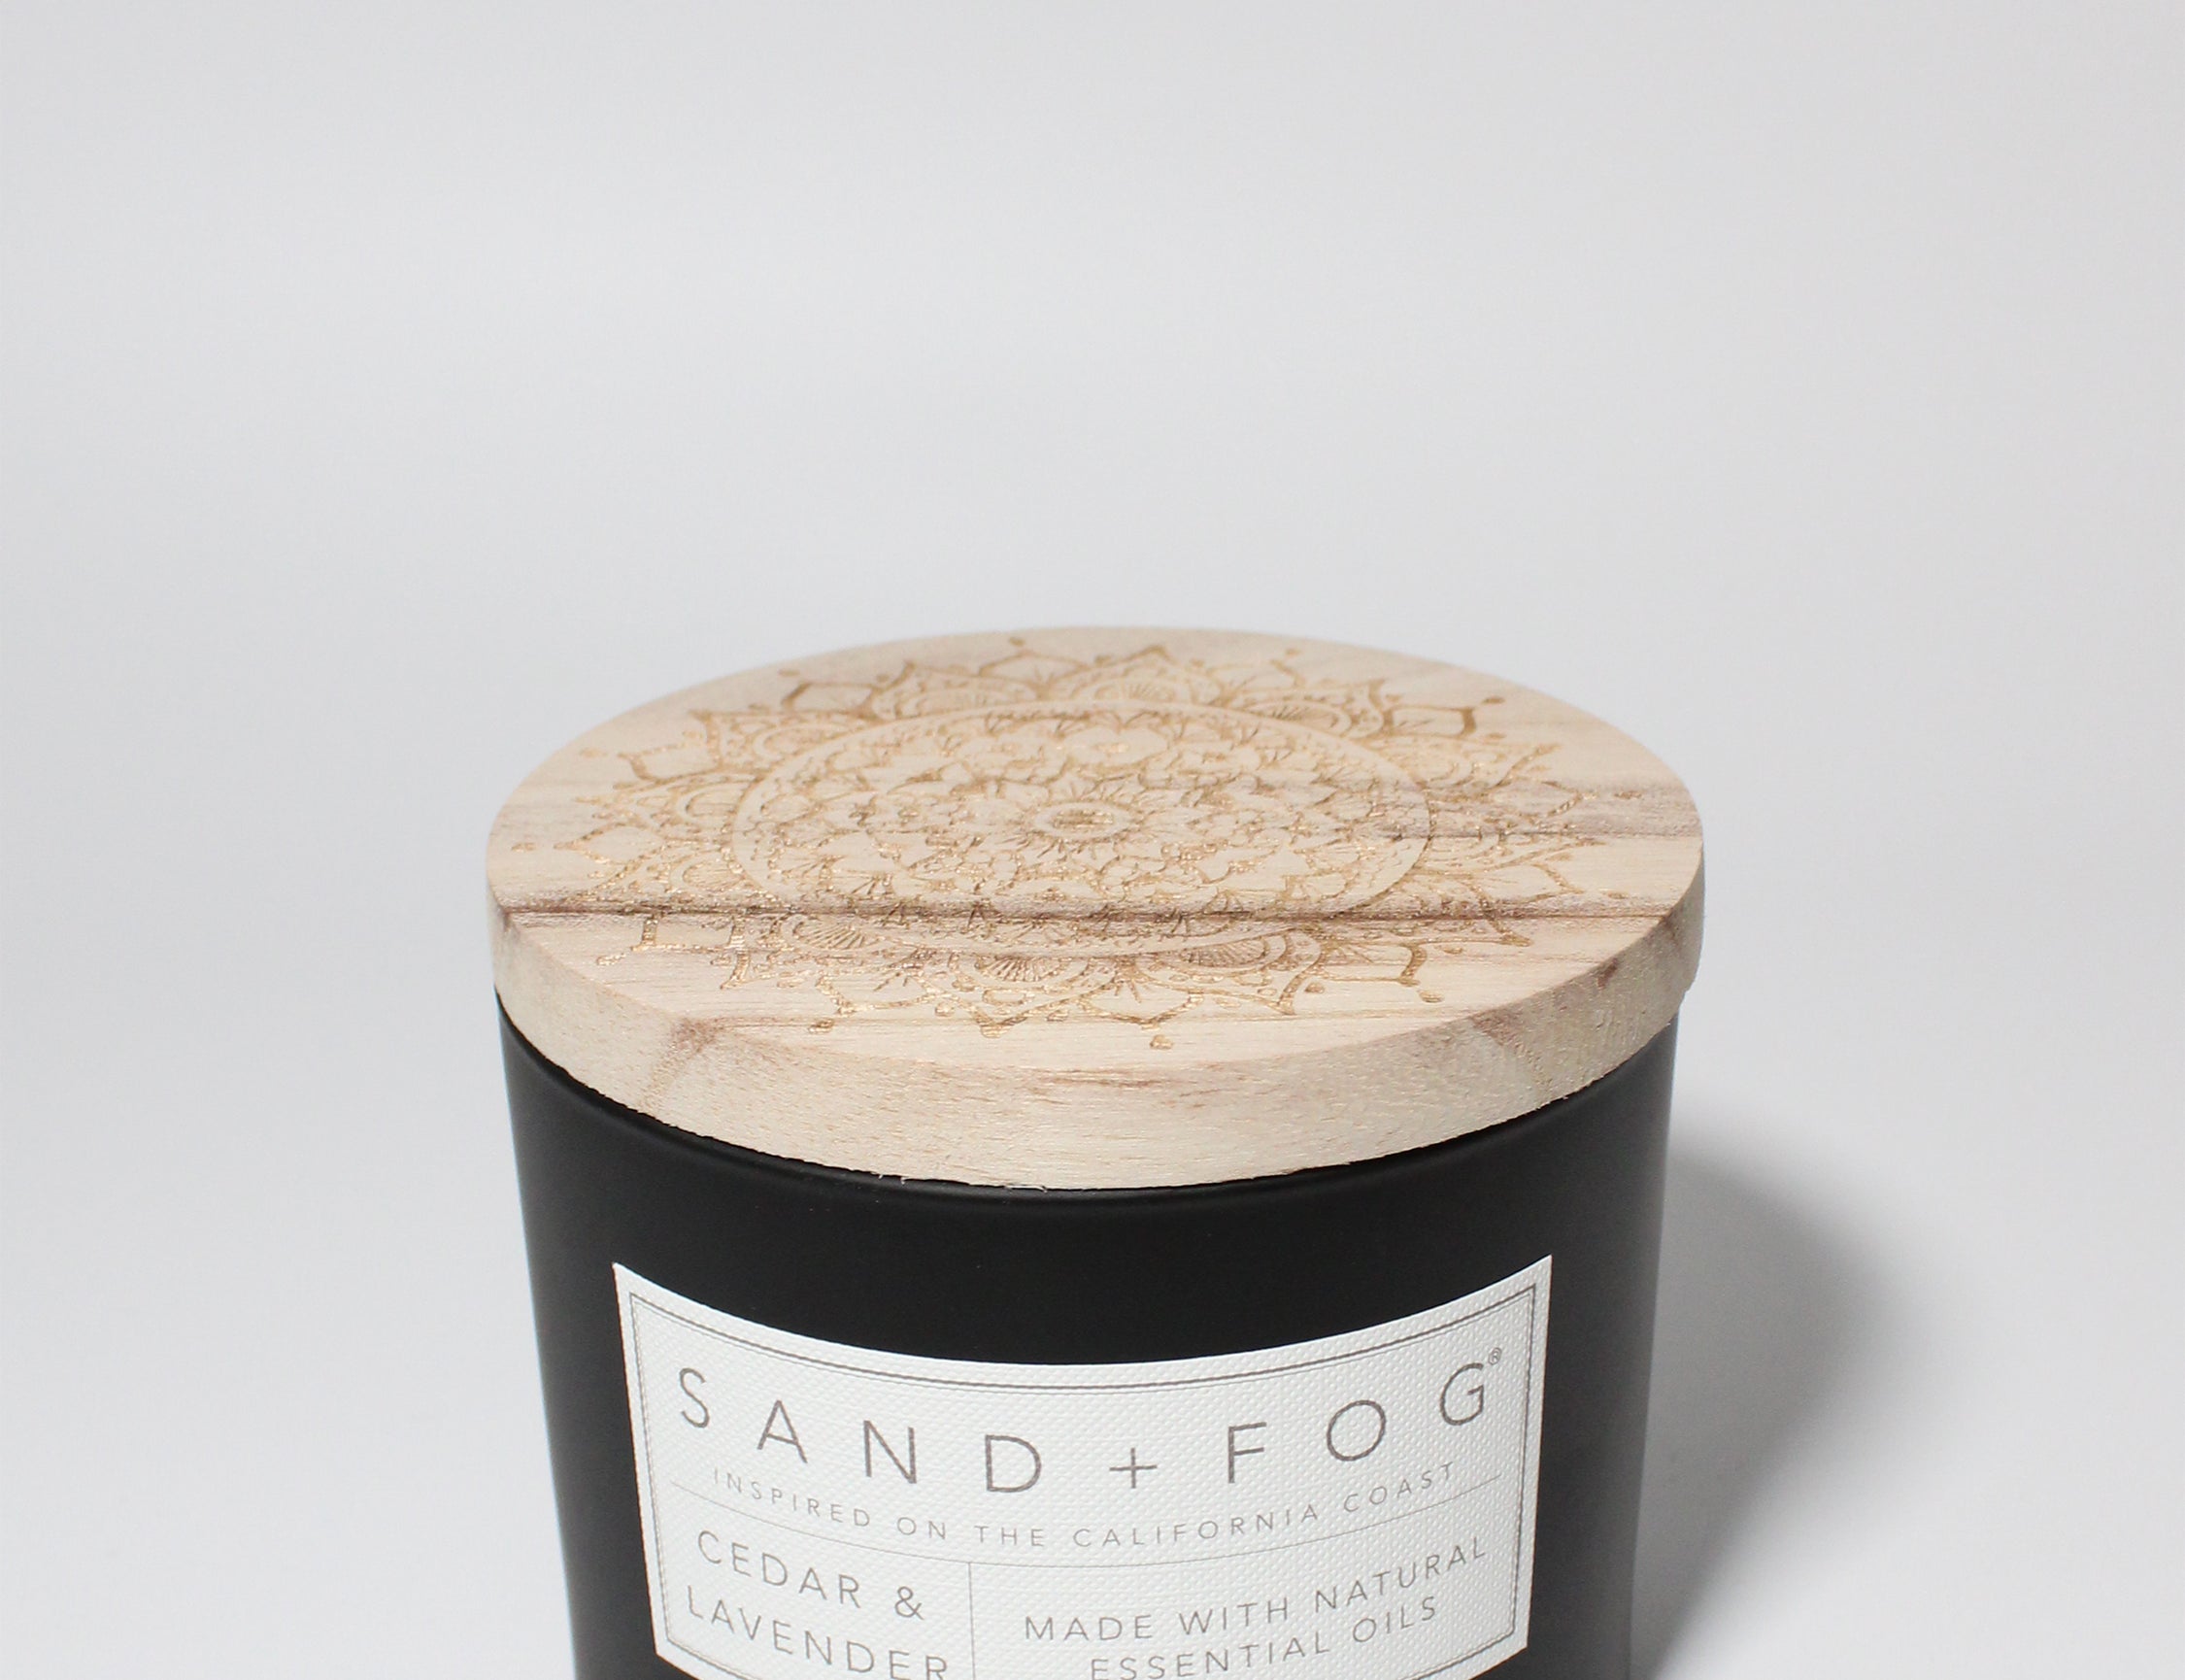 Cedar Lavender 12 oz scented candle Black vessel with Carved Wood lid